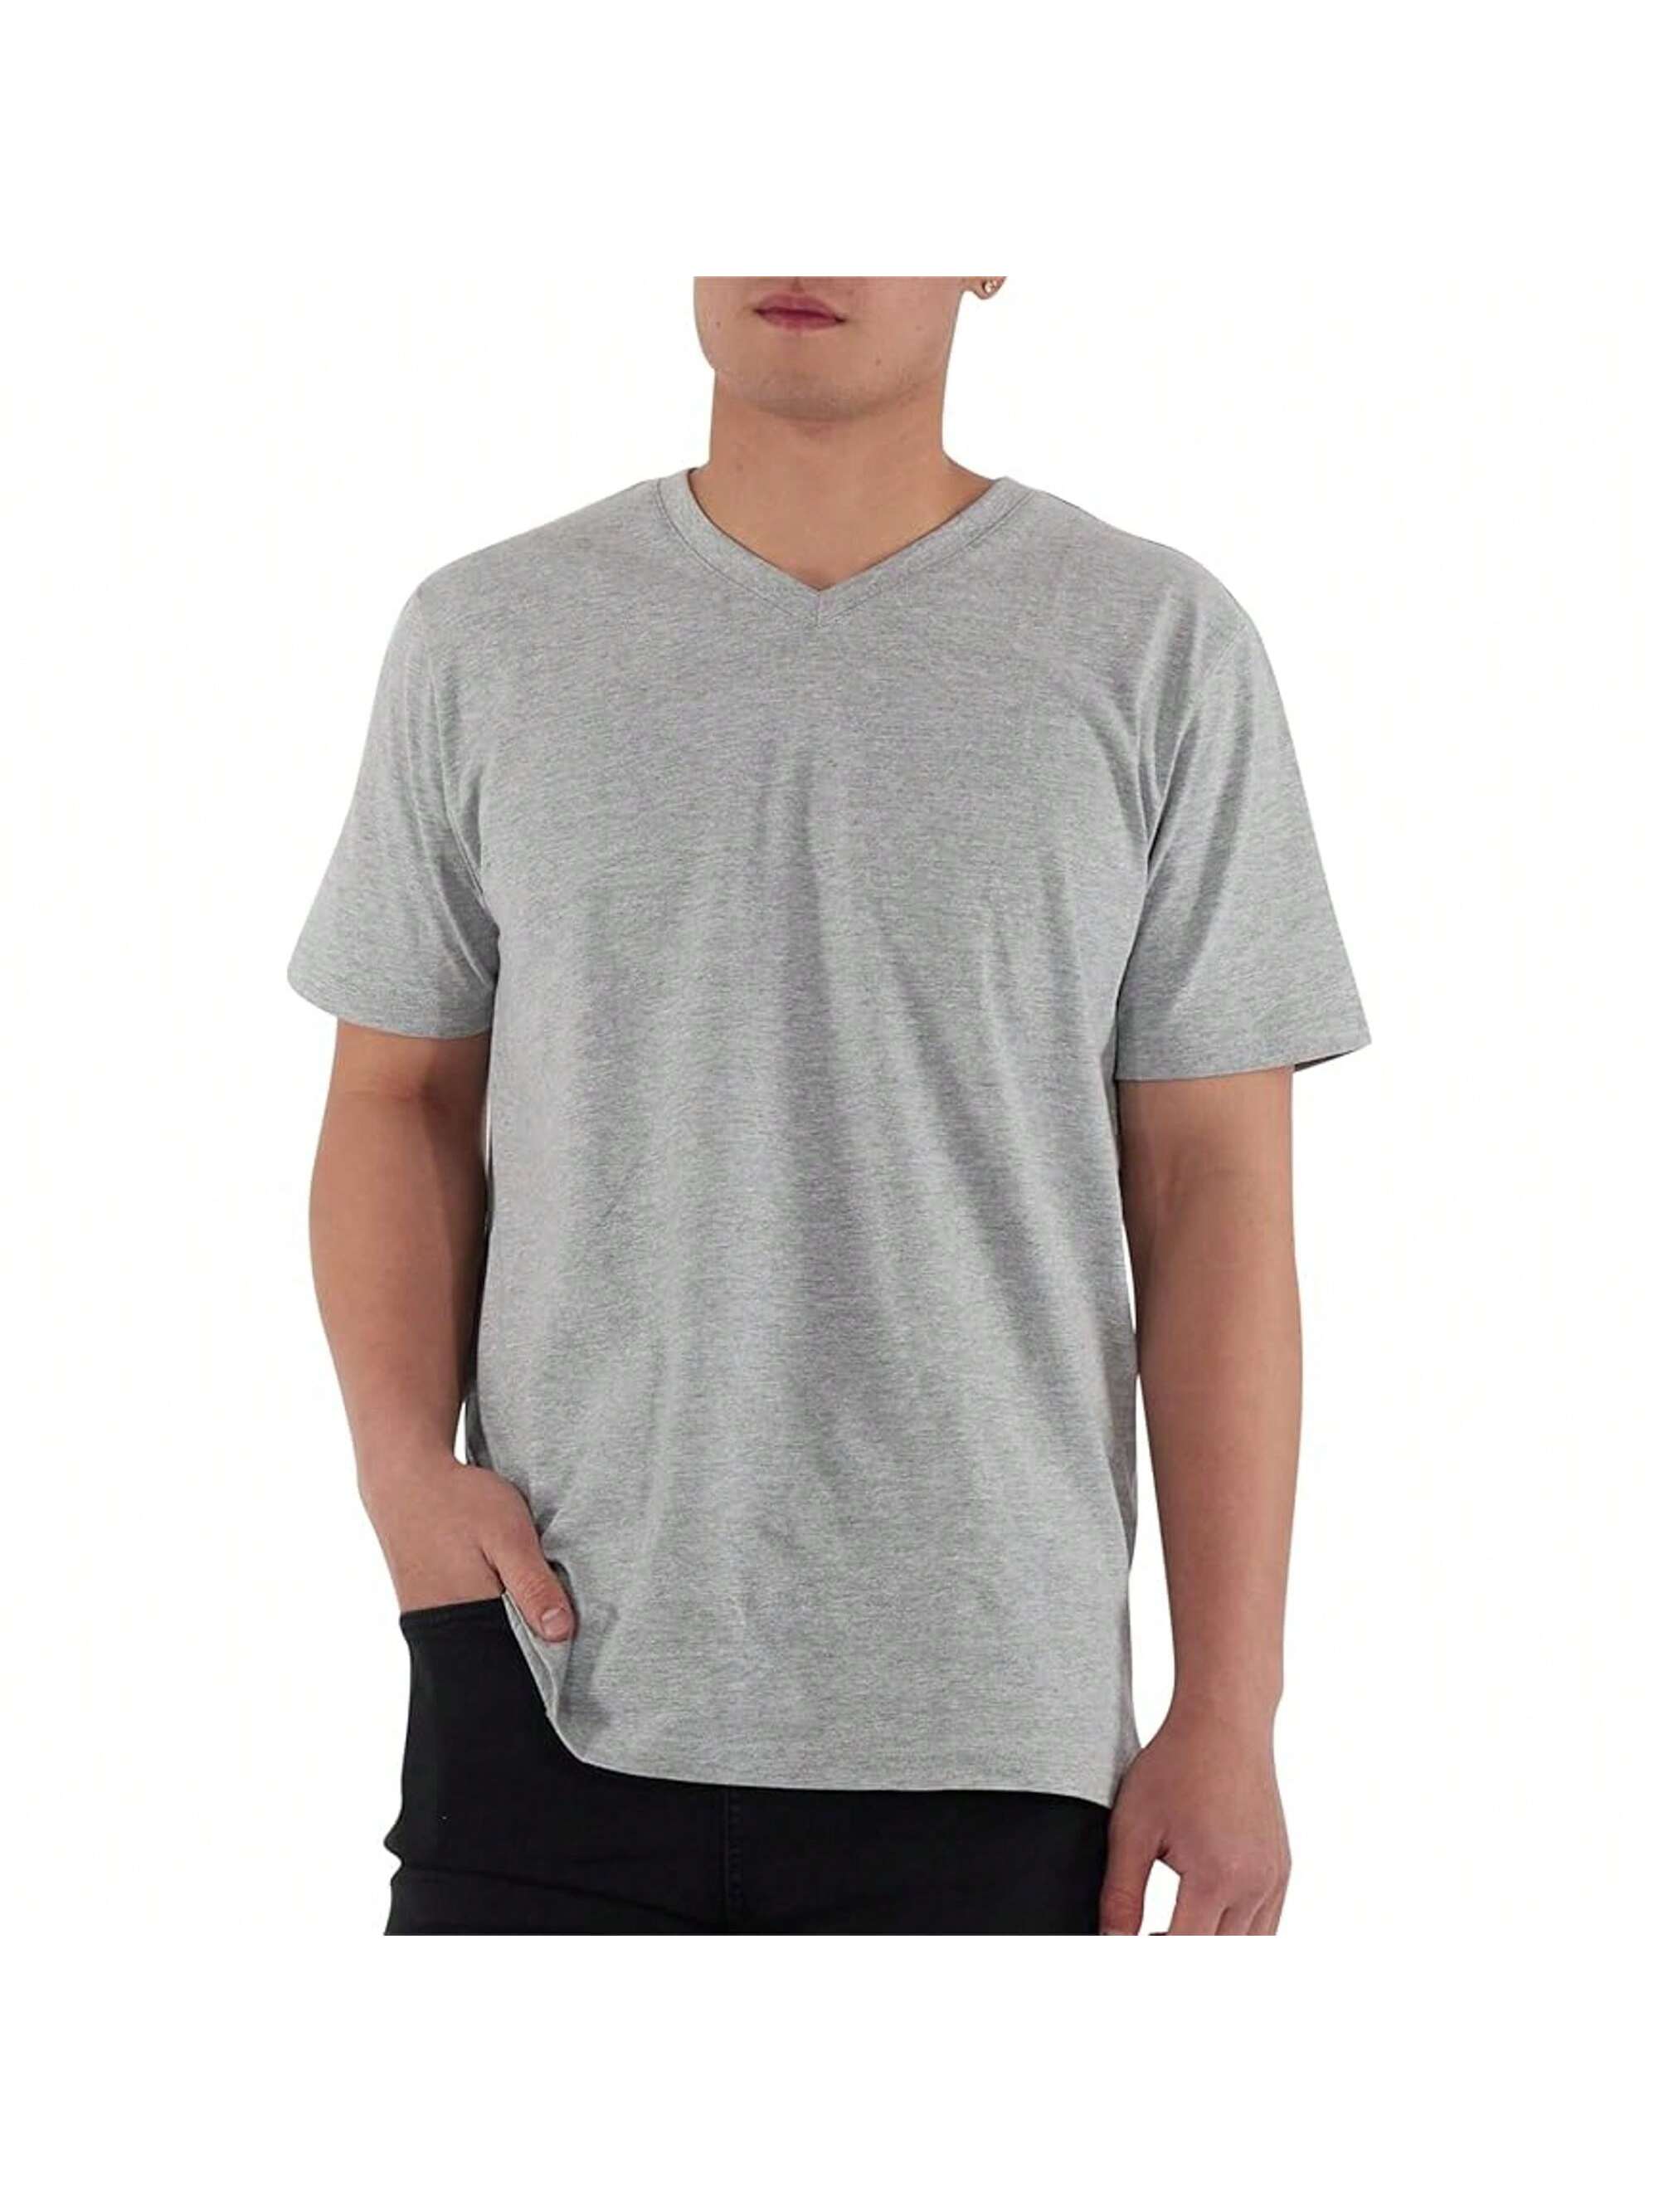 Мужская хлопковая футболка премиум-класса с v-образным вырезом Rich Cotton BLK-M, серый